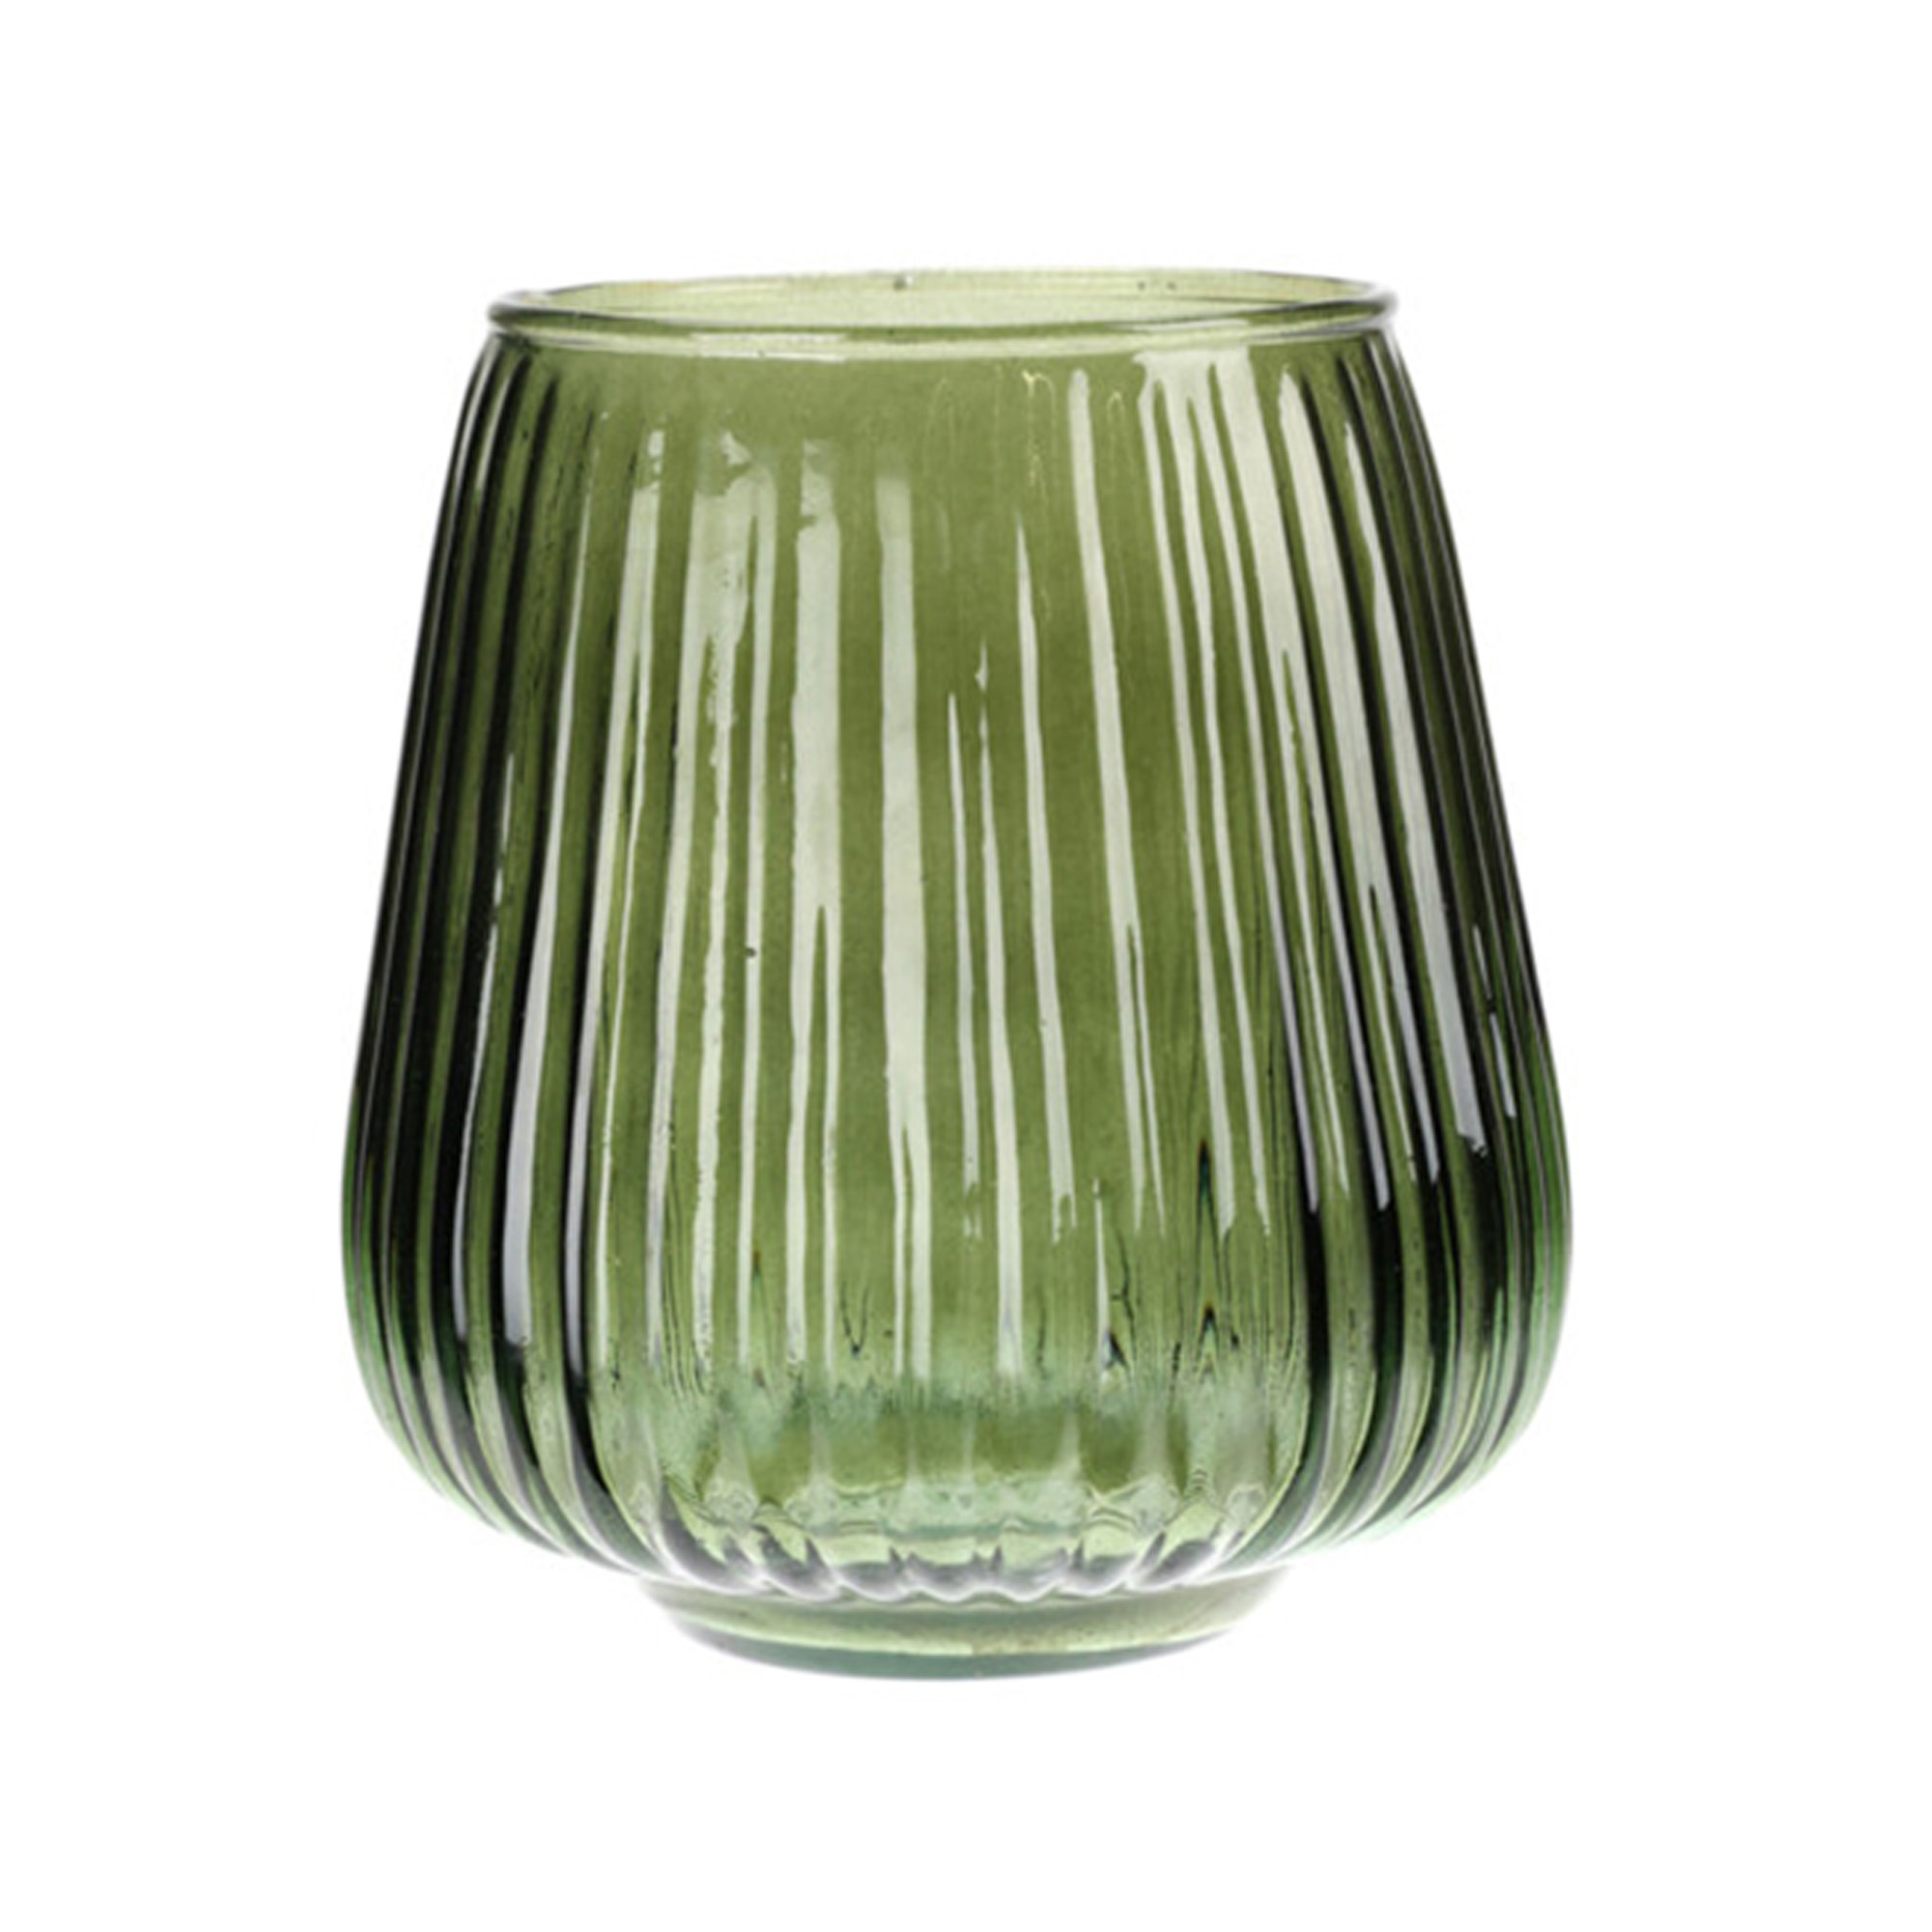 Excellent Houseware glazen vaas / bloemen vazen - groen - 18 x 19 cm -